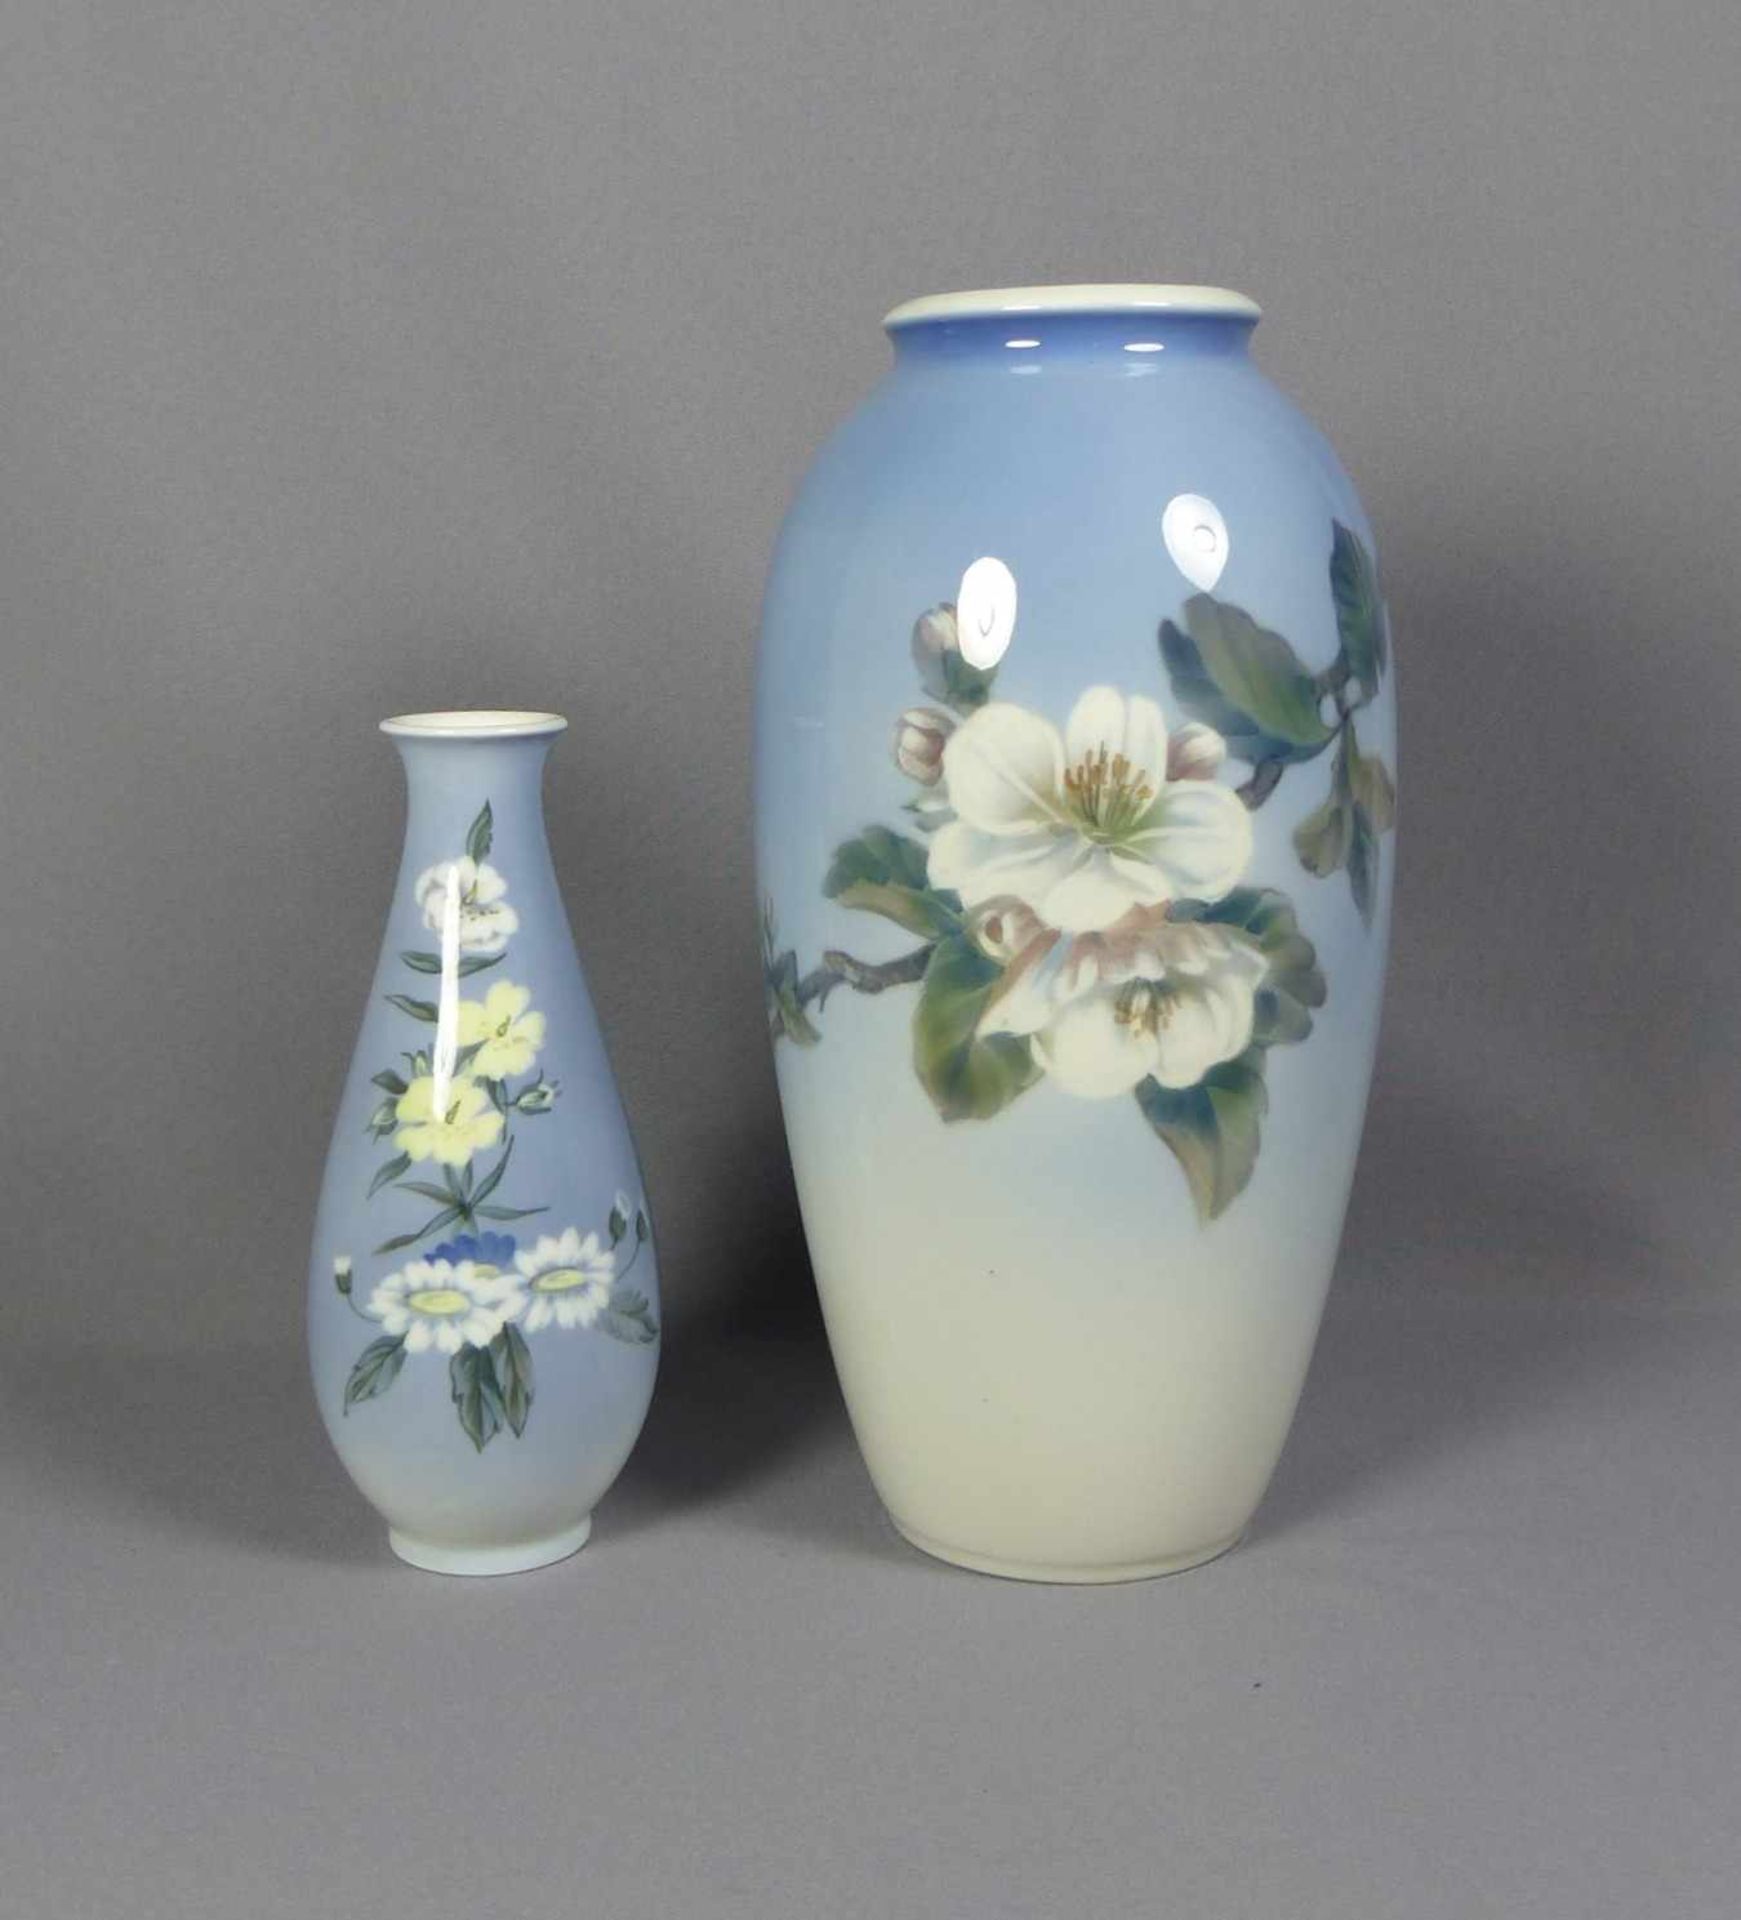 Zwei bauchige Vasen Royal Copenhagen, 20. Jh. In Pastelltönen bemalt mit großen Blumenzweigen auf